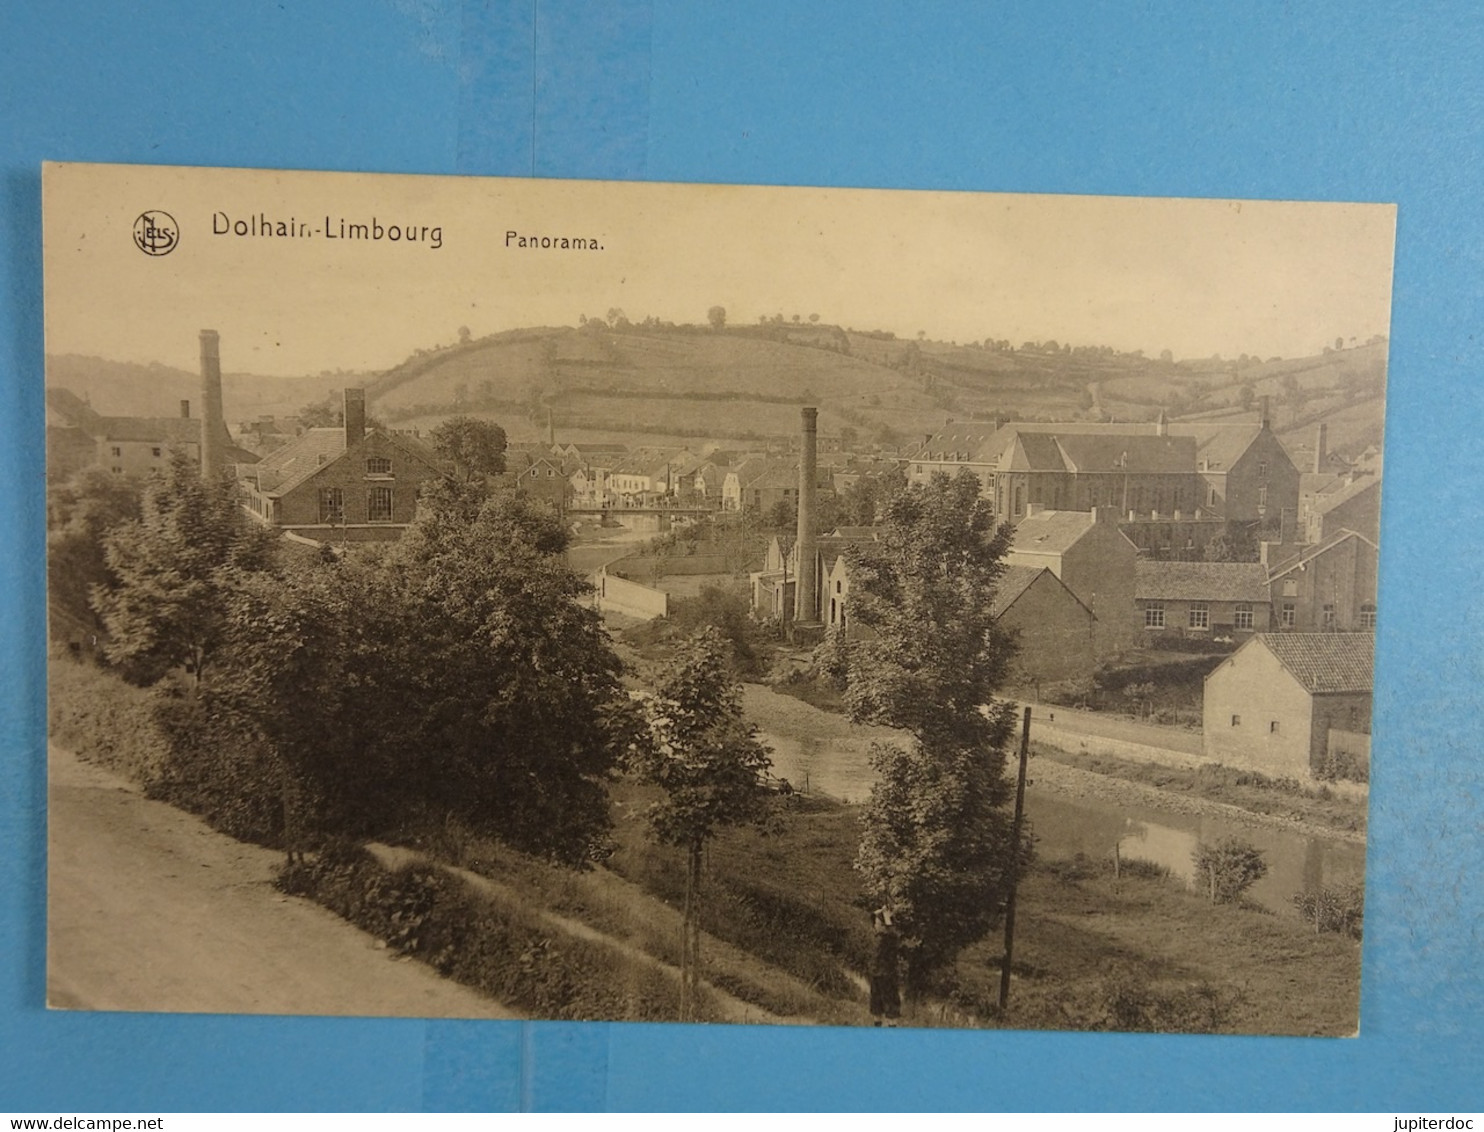 Dolhain-Limbourg Panorama - Limburg